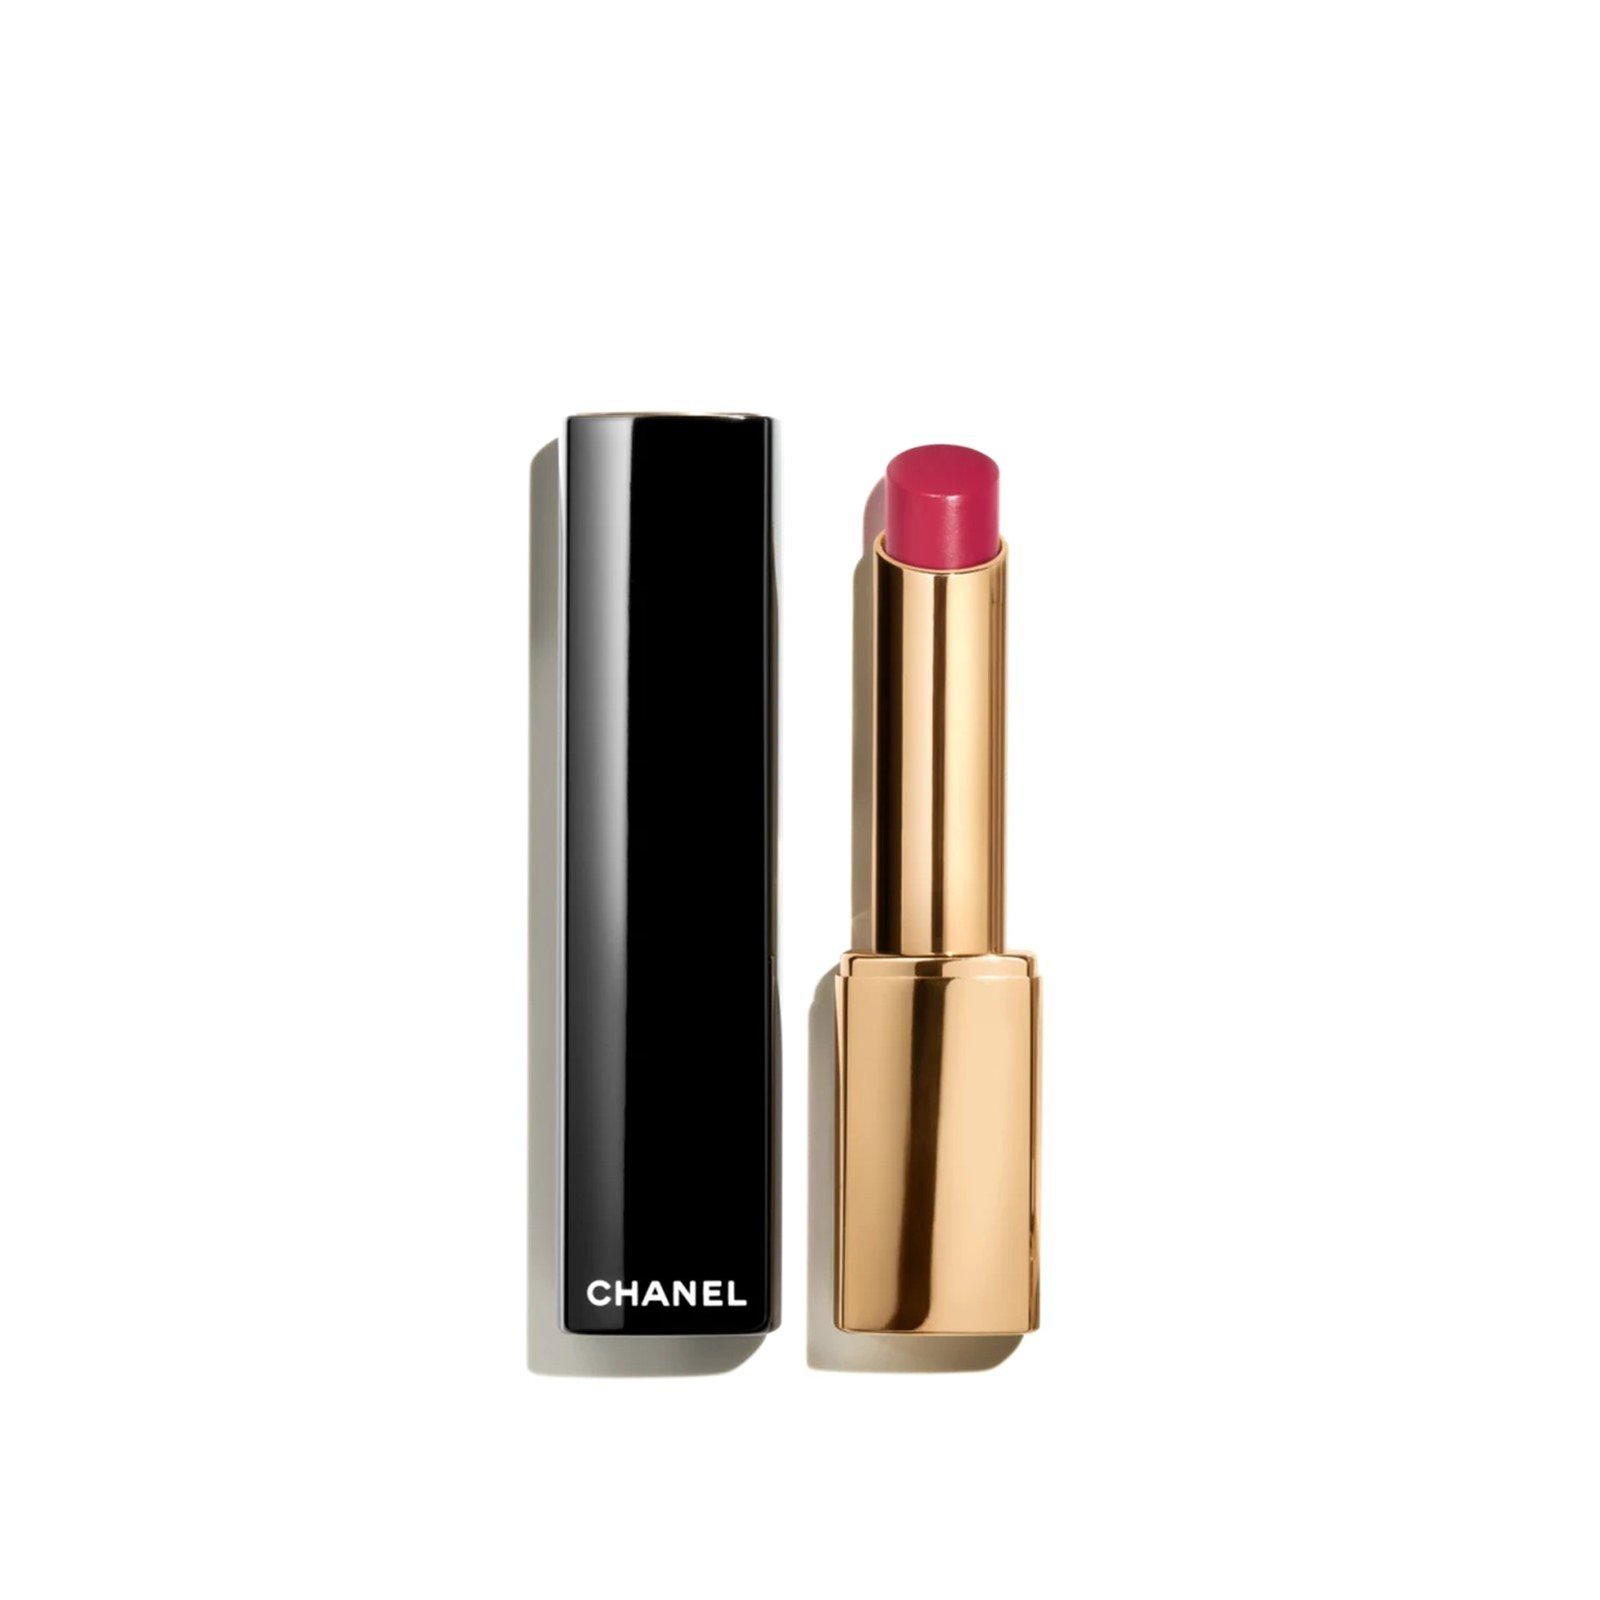 CHANEL Rouge Allure L'Extrait High-Intensity Lip Colour 838 Rose Audacieux 2g (0.07 oz)